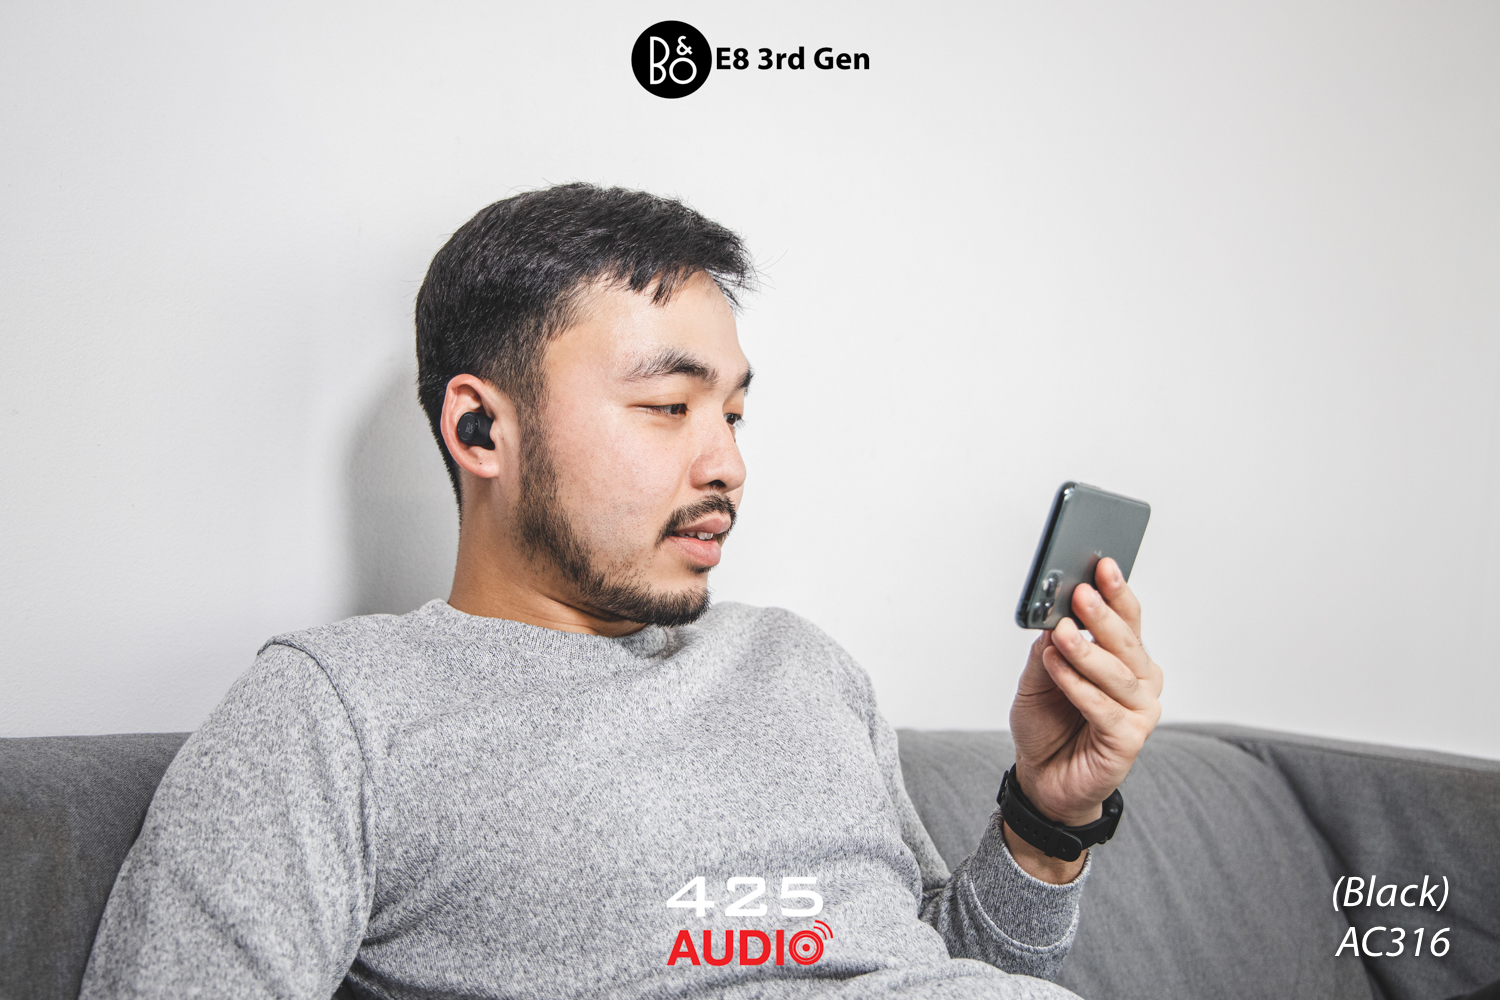 B&O E8 3rd Gen,B&O E8 Gen 3,B&O E8,B&O,หูฟัง True Wireless,หูฟังไร้สาย,Bluetooth 5.1,aptX